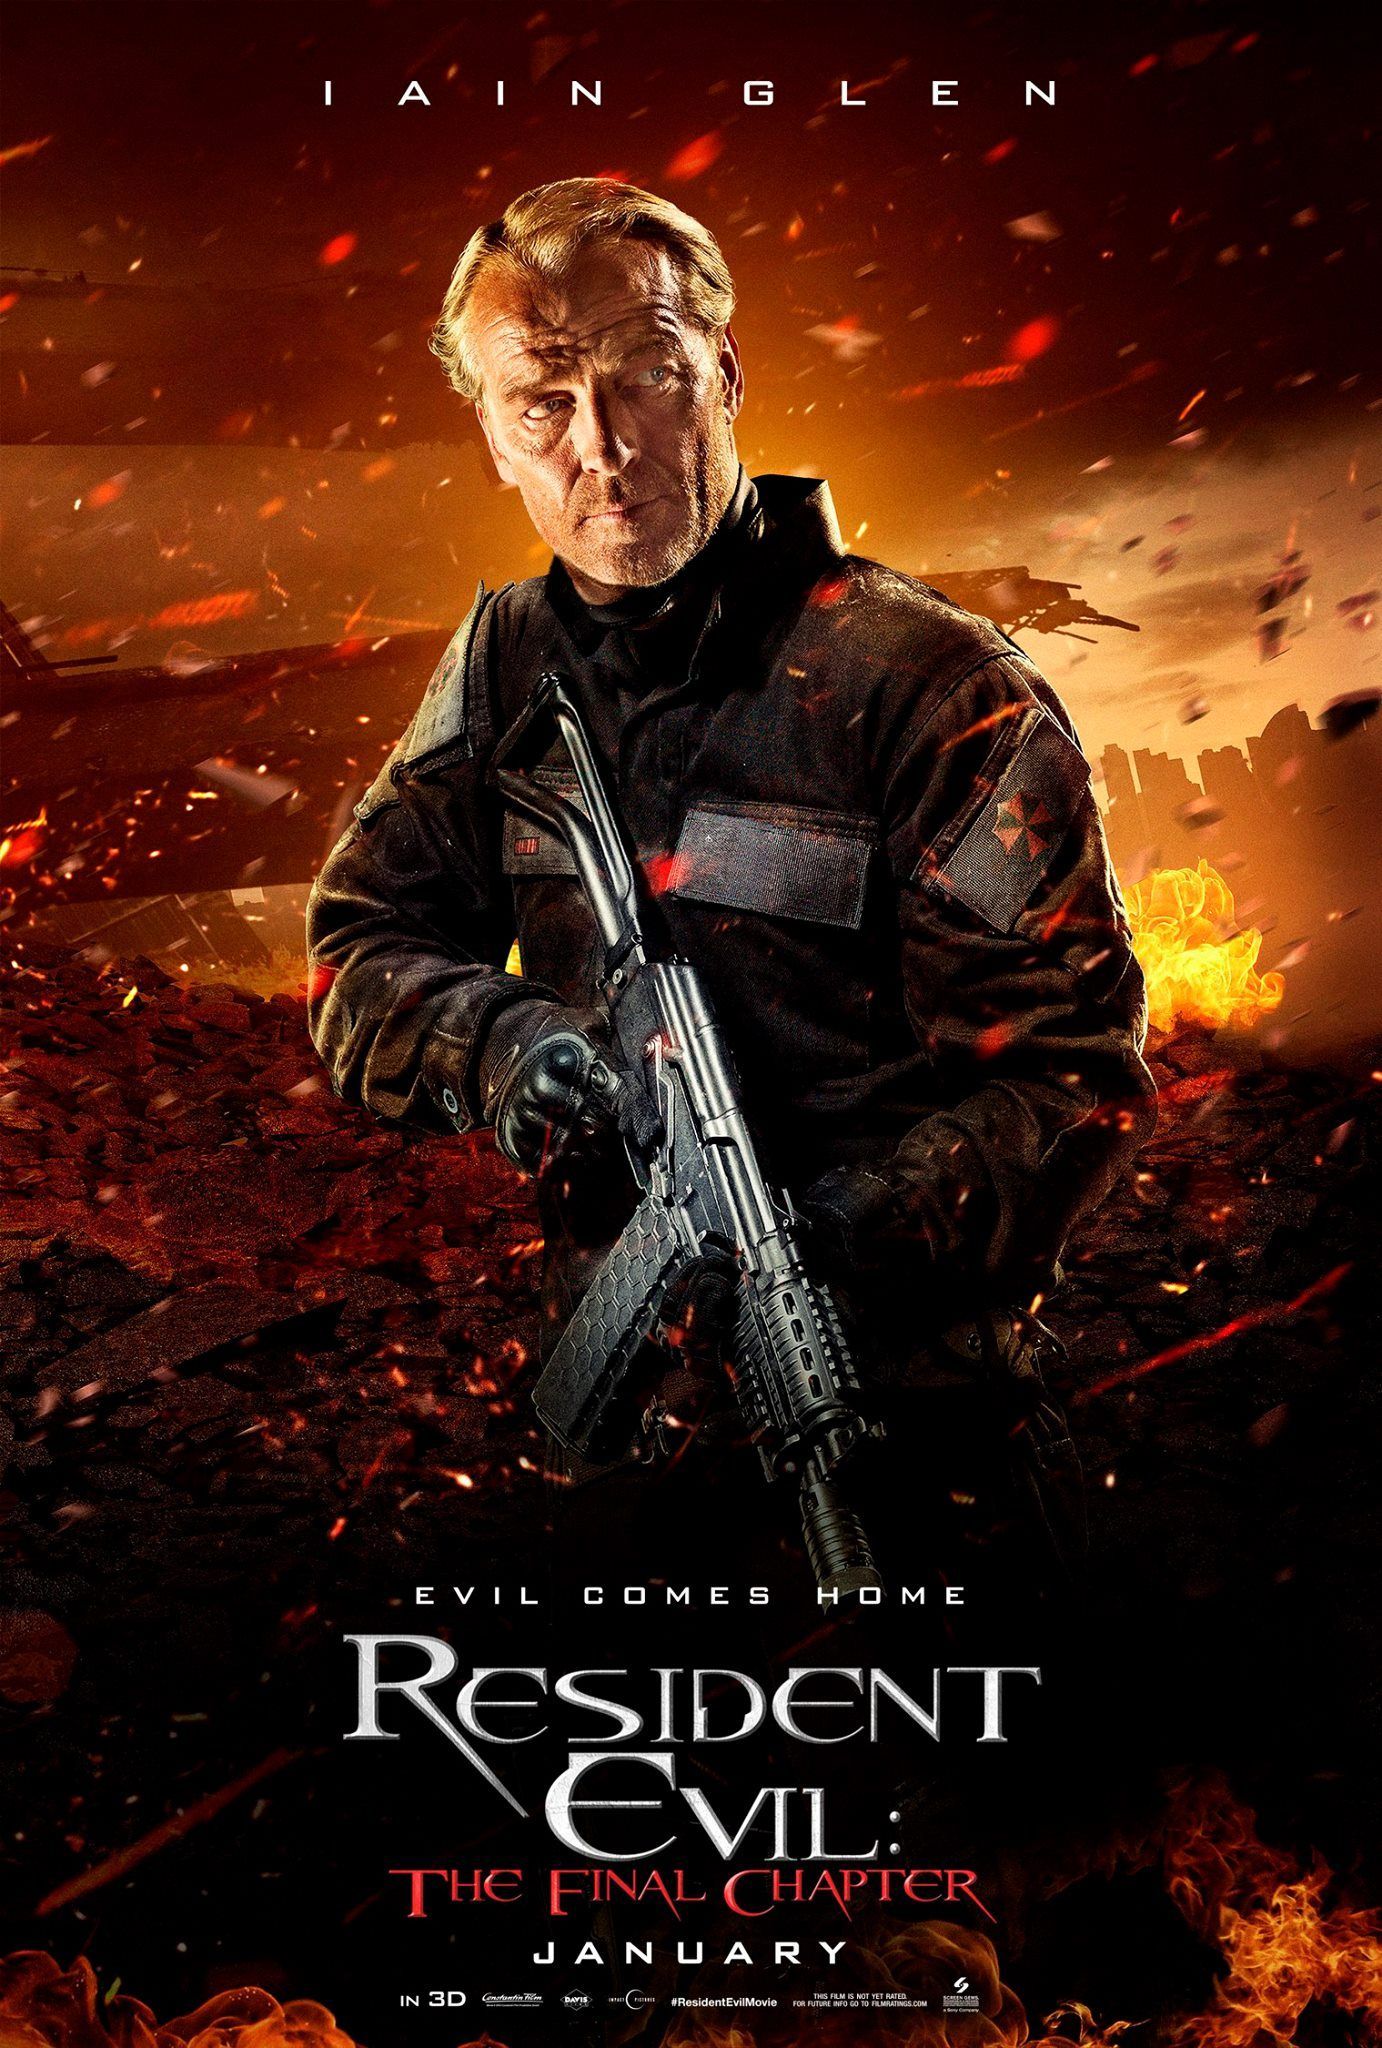 Resident Evil The Final Chapter - Iain Glen poster